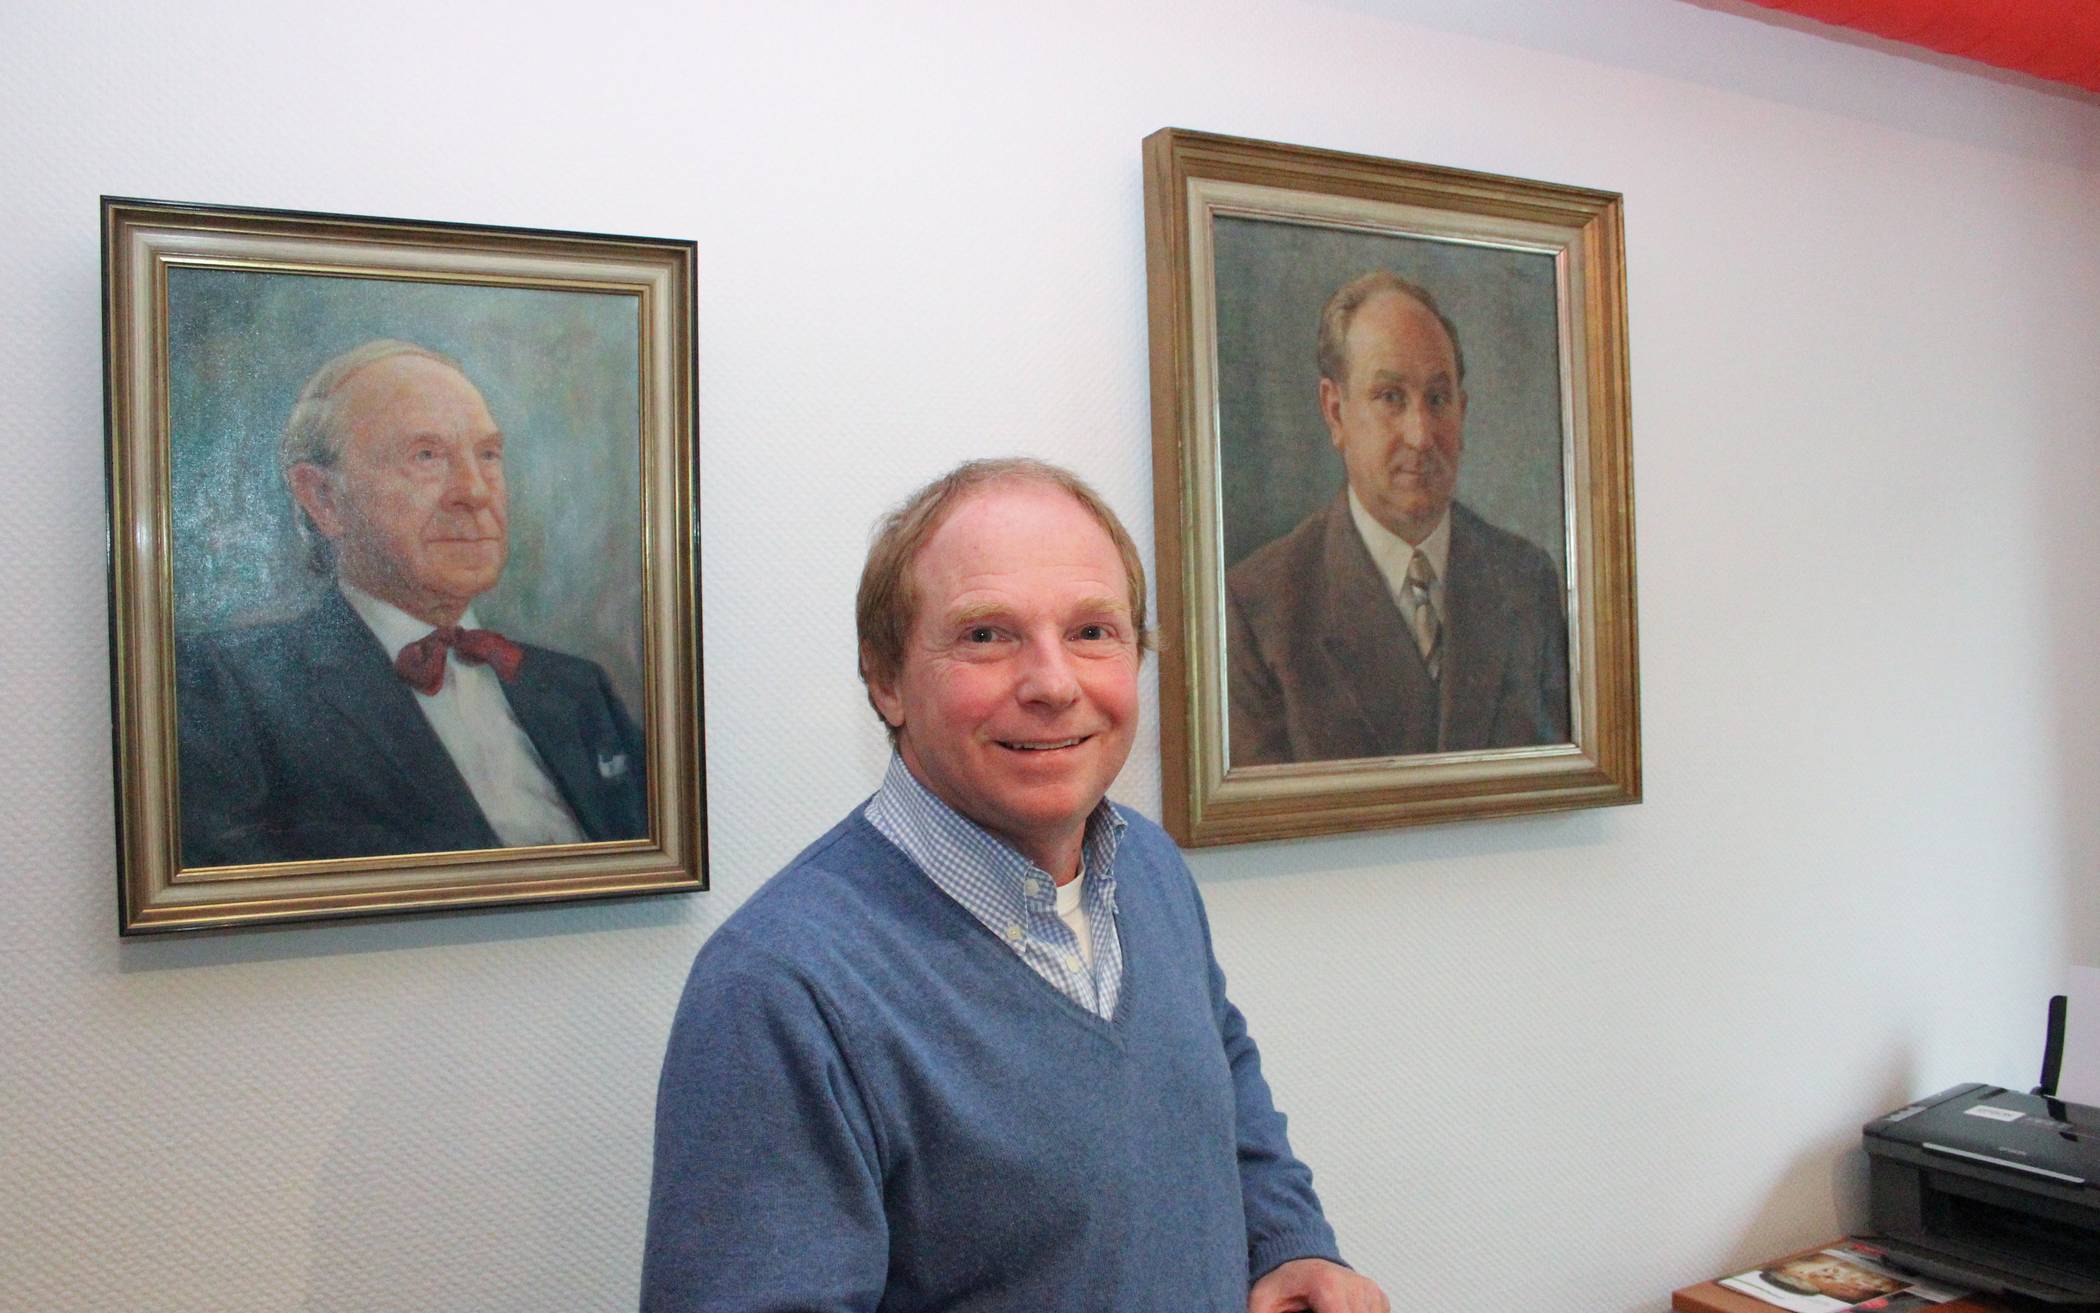  Benedikt Odenthal erzählt von seinem Vater, dessen Porträt links neben ihm zu sehen ist. 